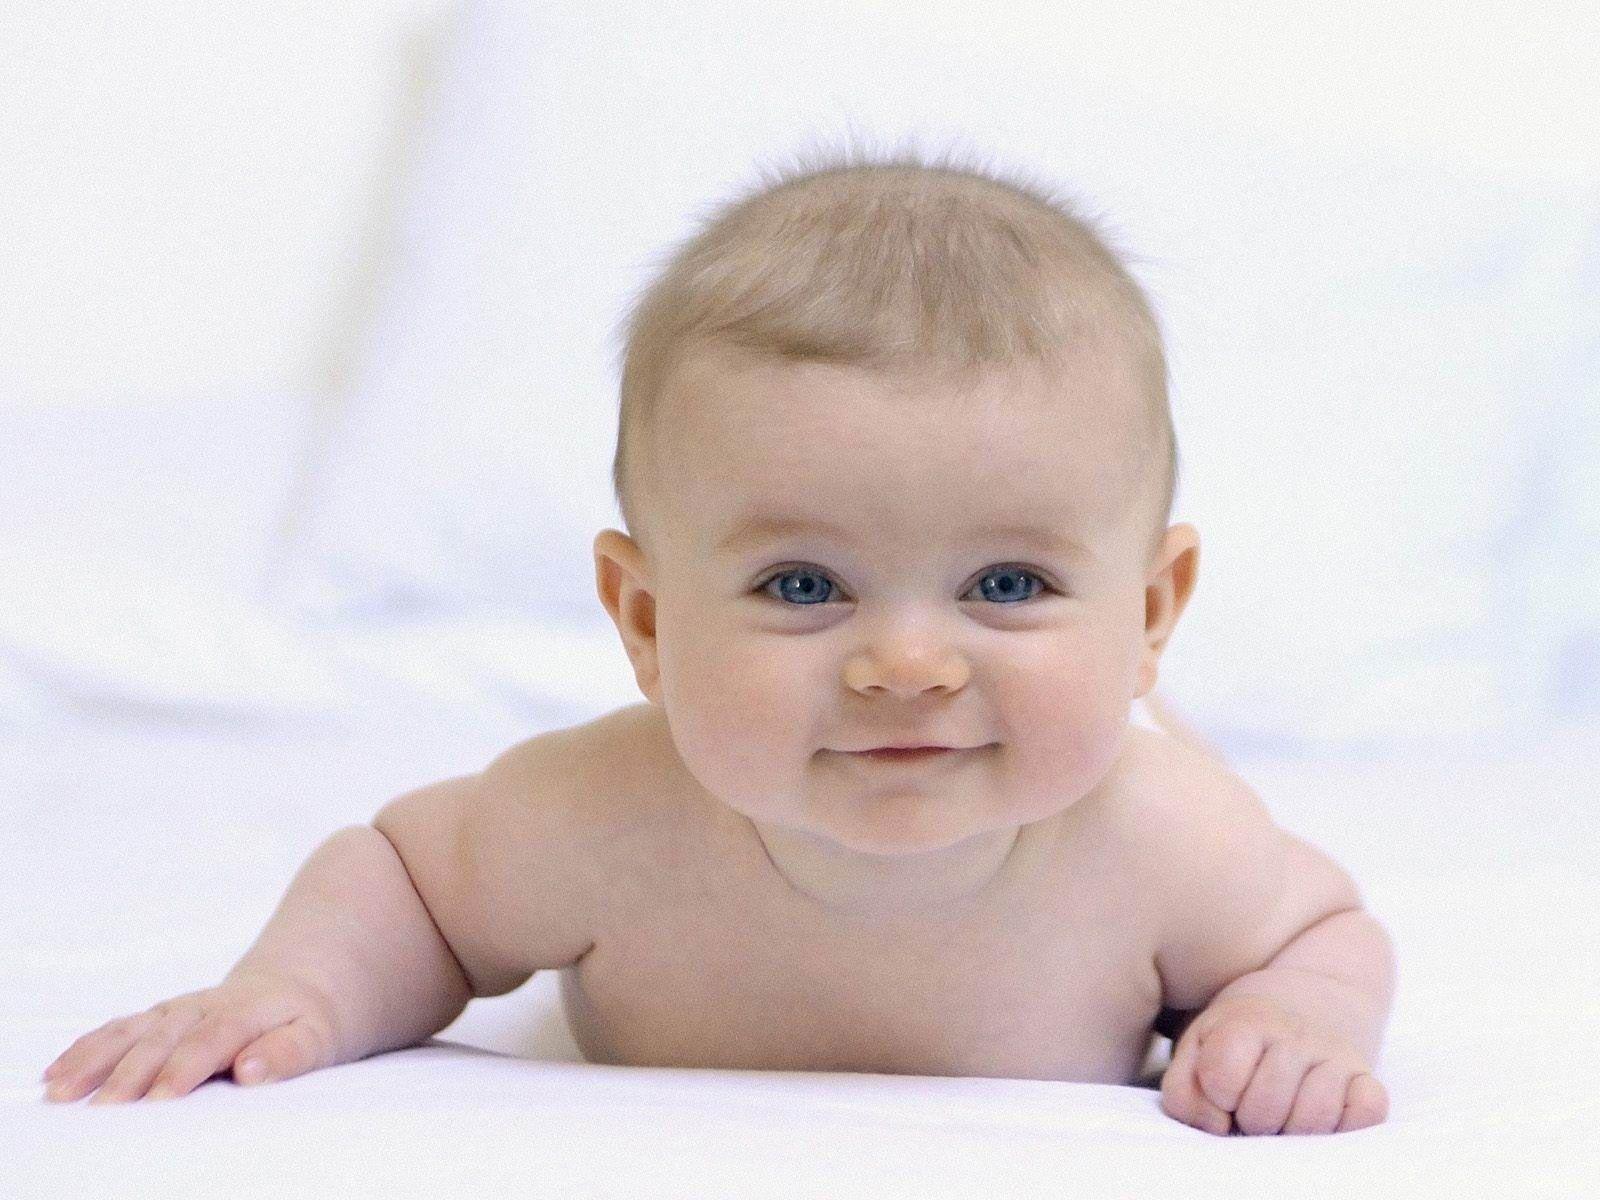 Baby Photo Wallpaper: Cute Baby Photo Wallpaper. .Ssofc